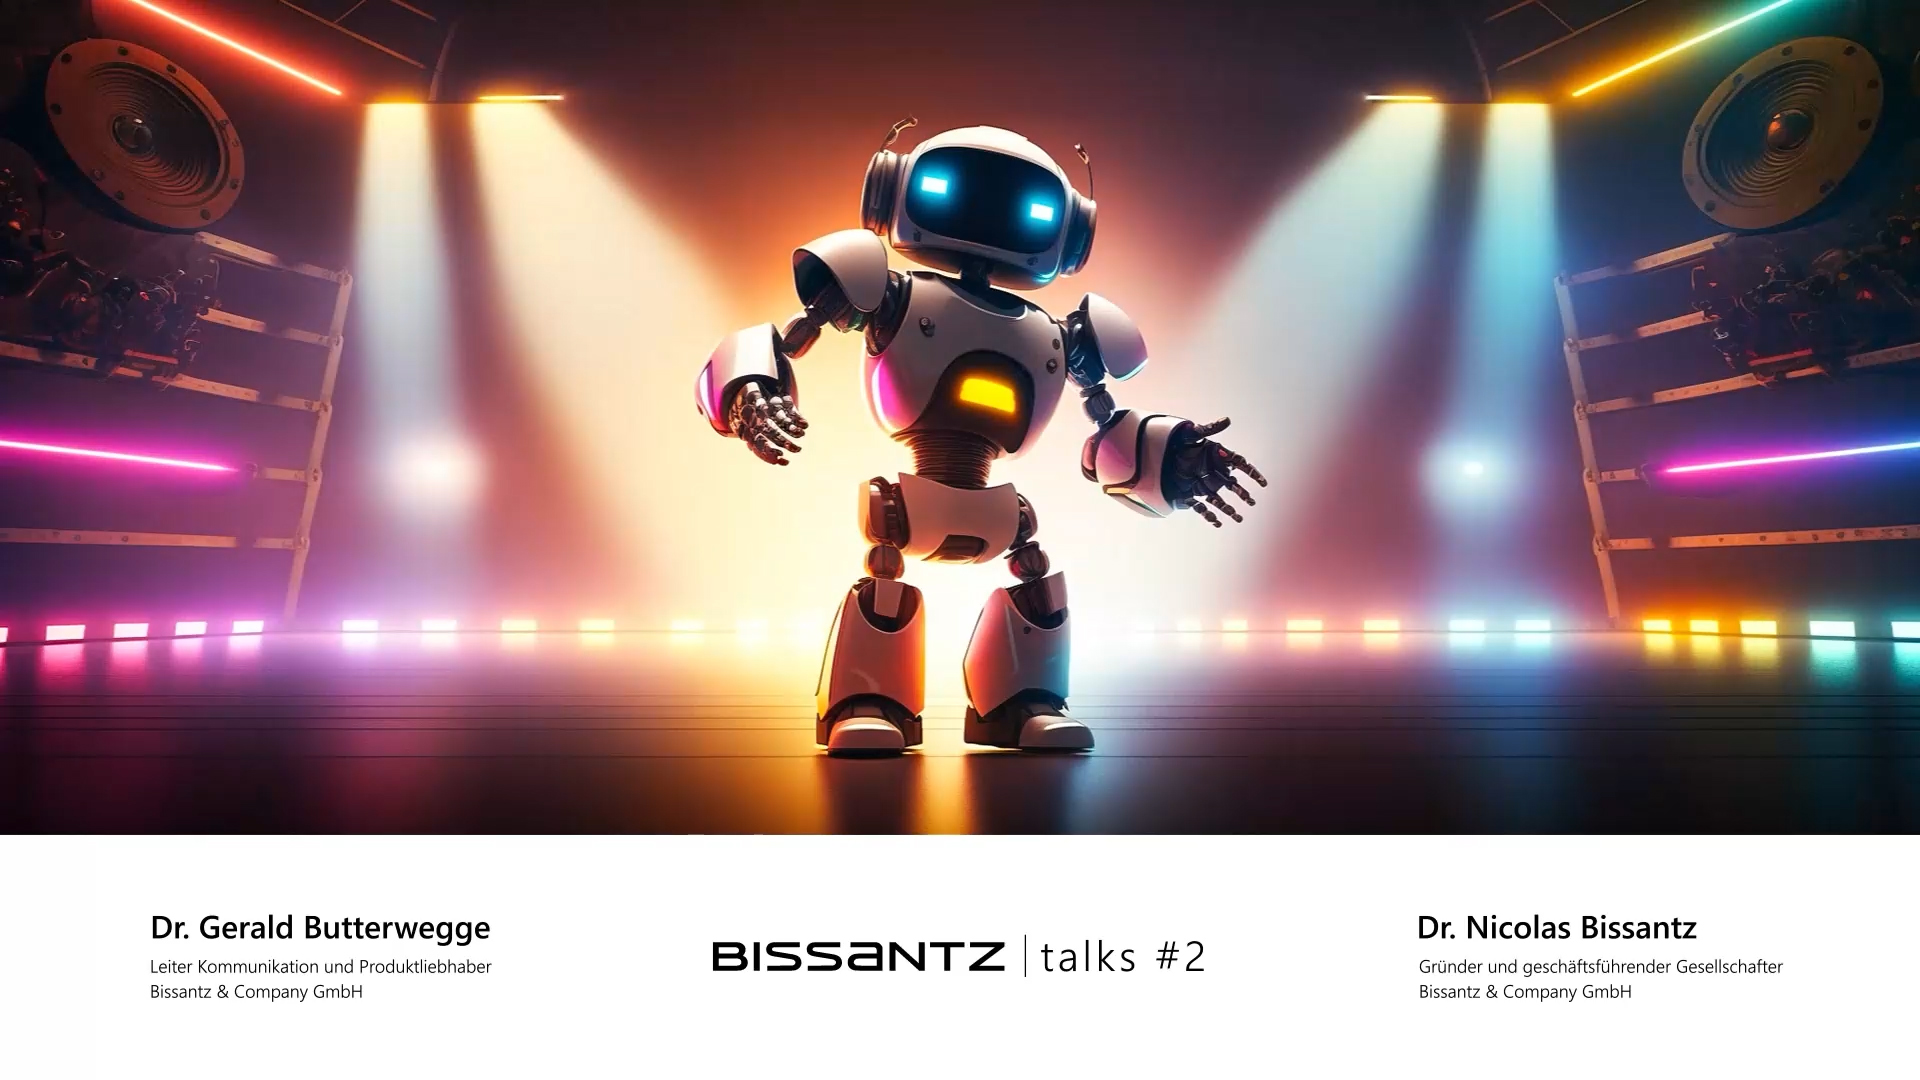 Bissantz Talks: Roboter hören die Musik nicht - mit Dr. Nicolas Bissantz und Dr. Gerald Butterwegge